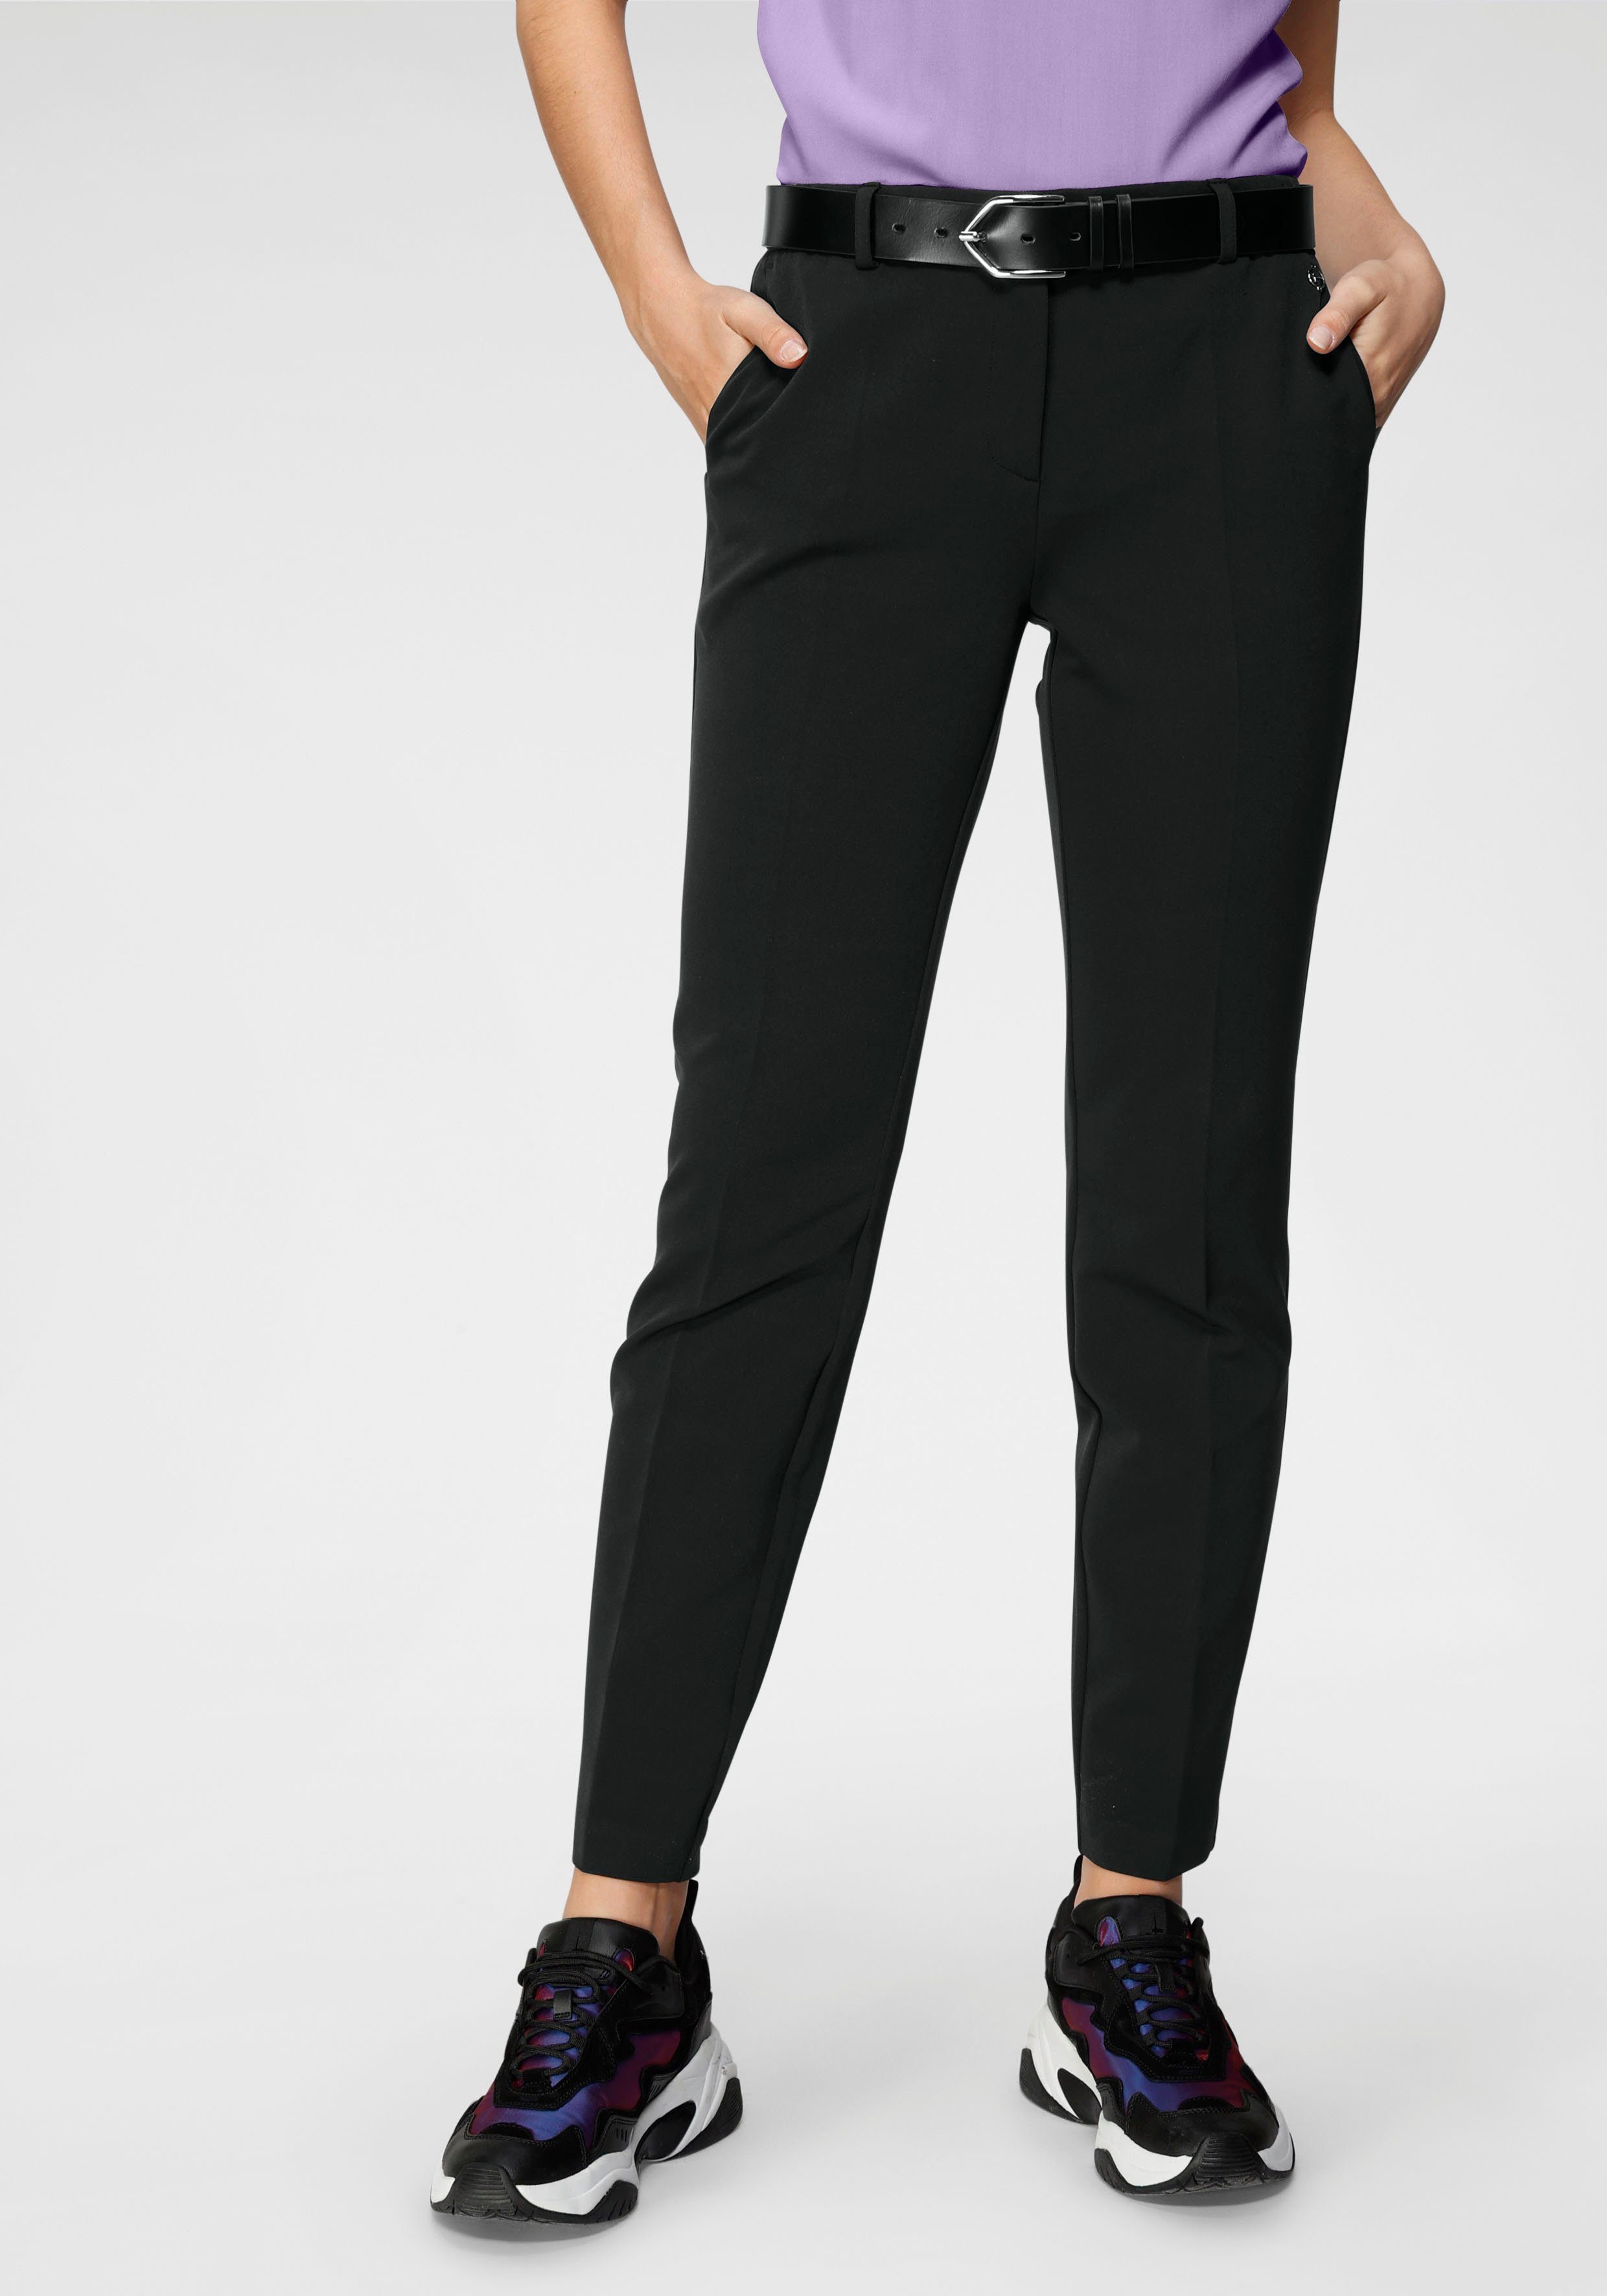 Tamaris Anzughose in Trendfarben schwarz ( Hose aus nachhaltigem Material)